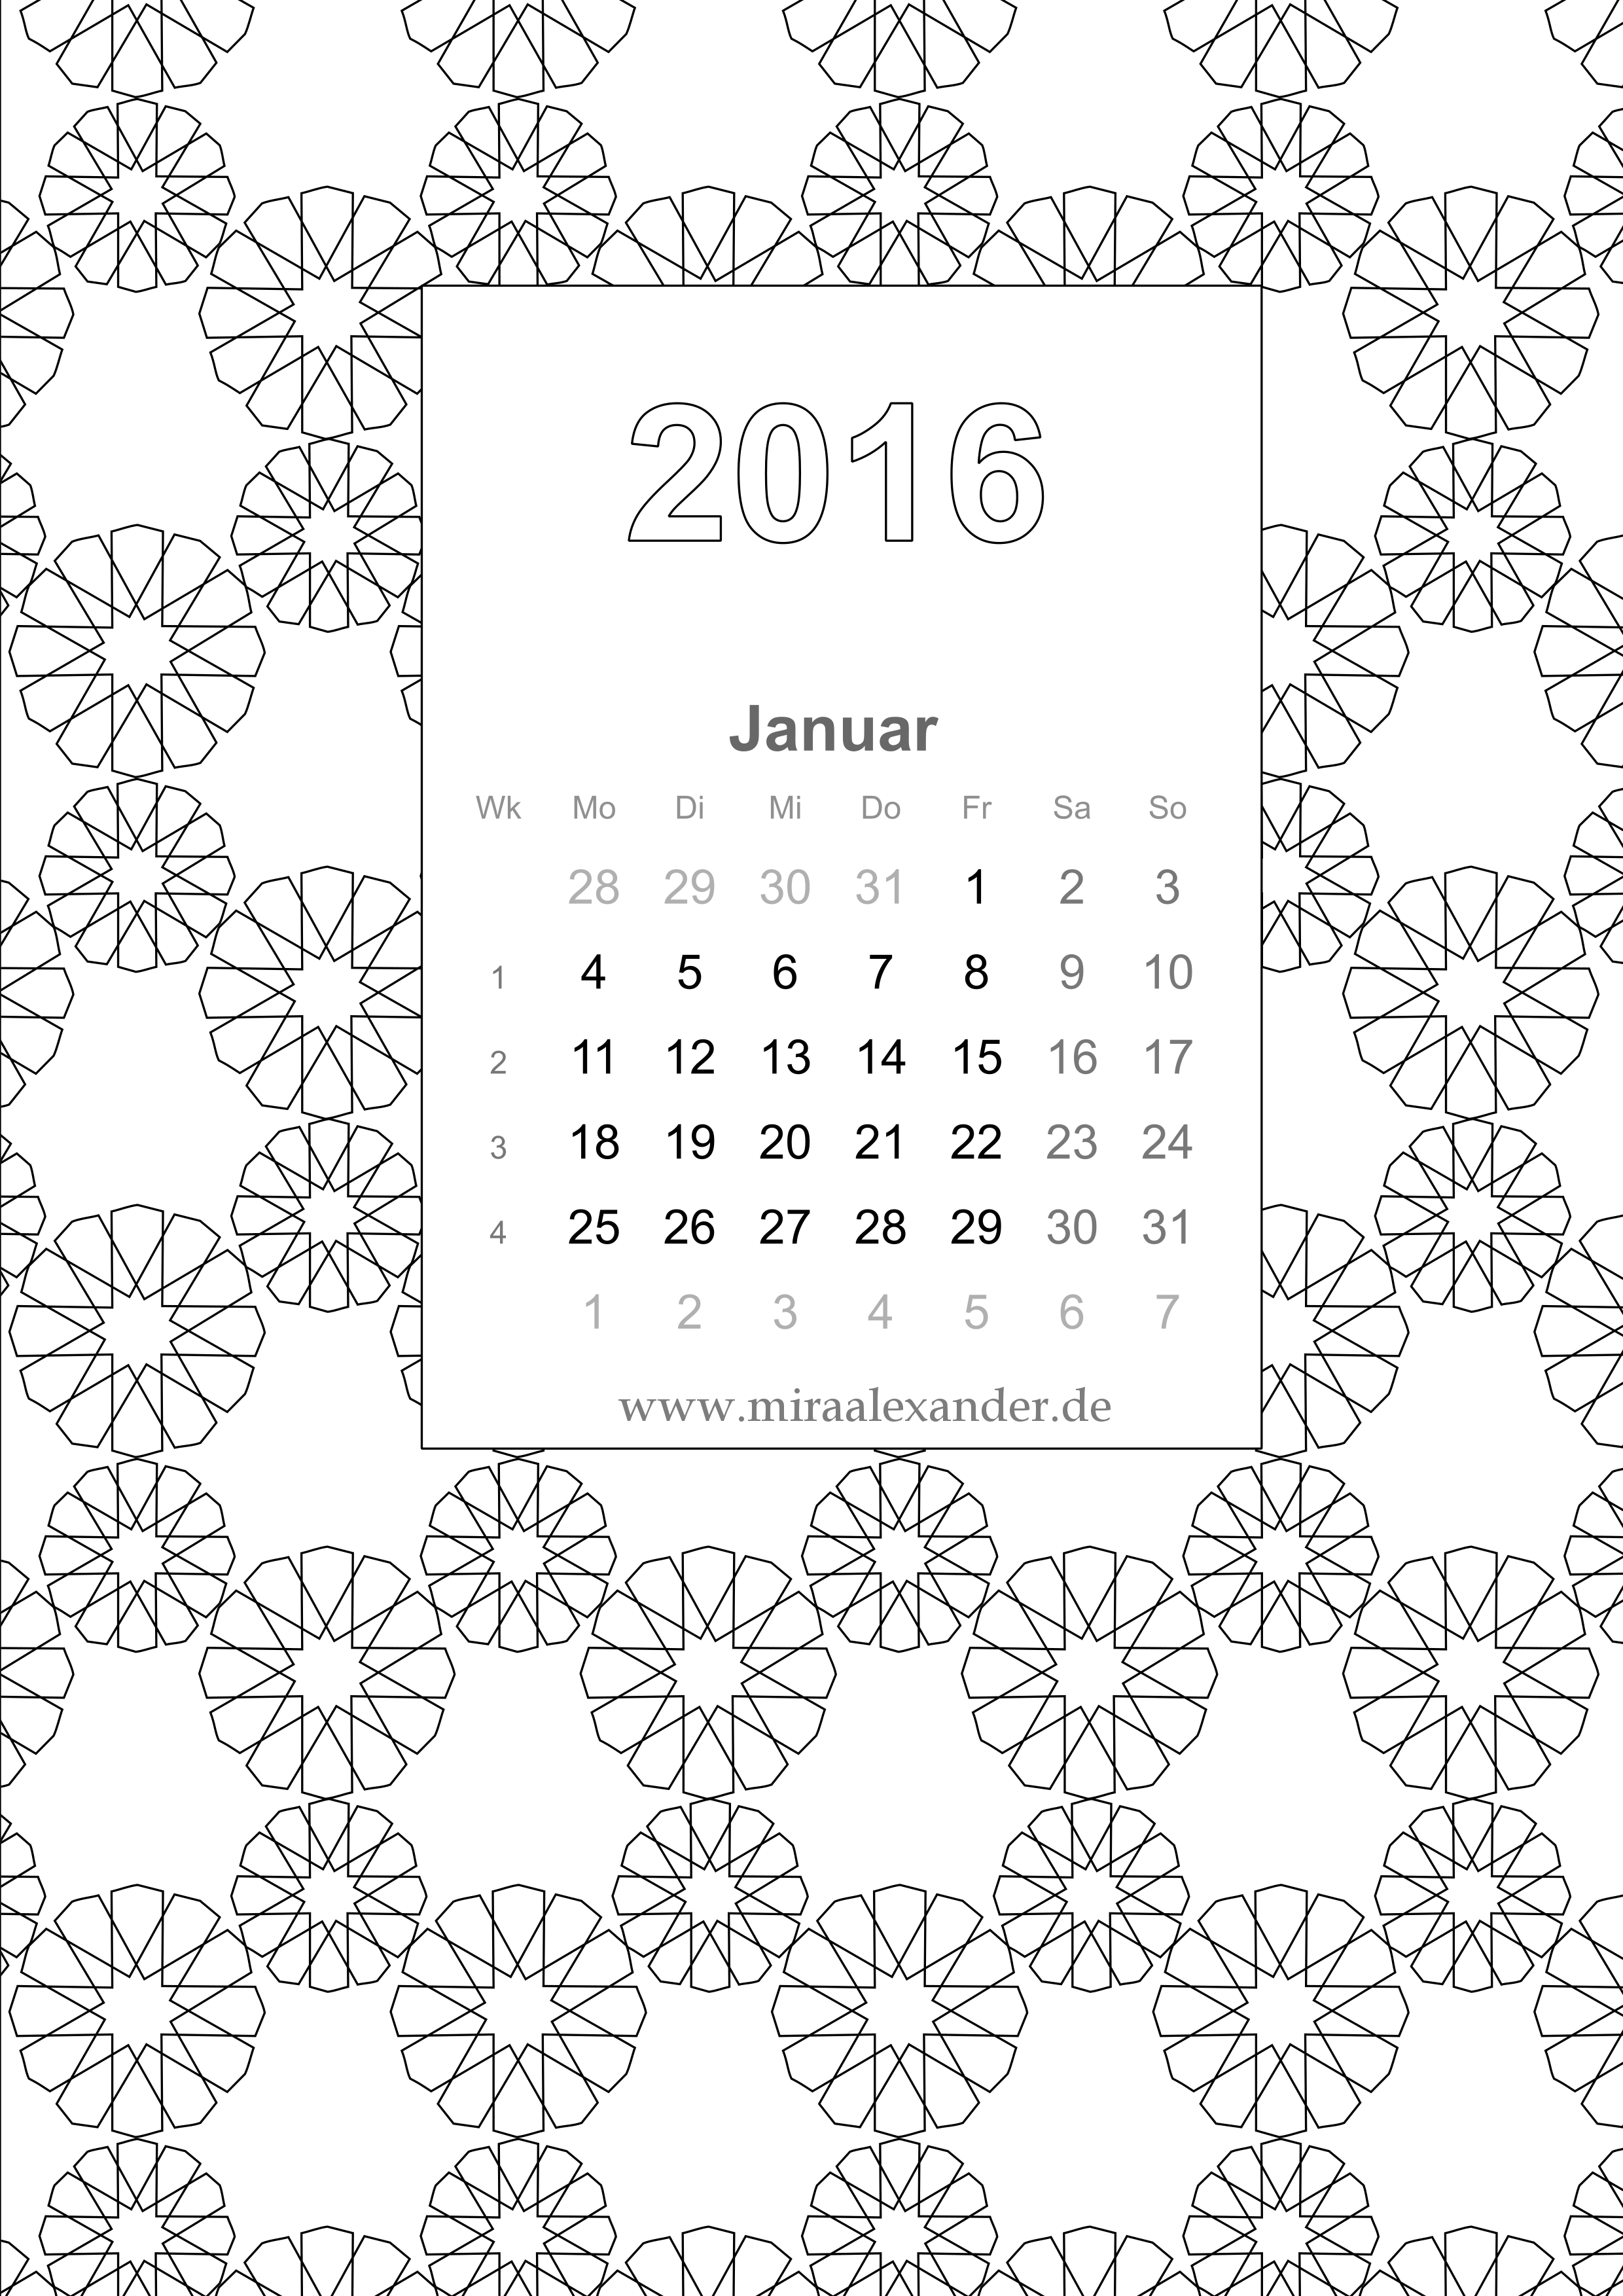 Kalenderblatt zum Ausmalen von Mira Alexander, schwarz-weiß / Coloring Book Calendar page by Mira Alexander, black-white